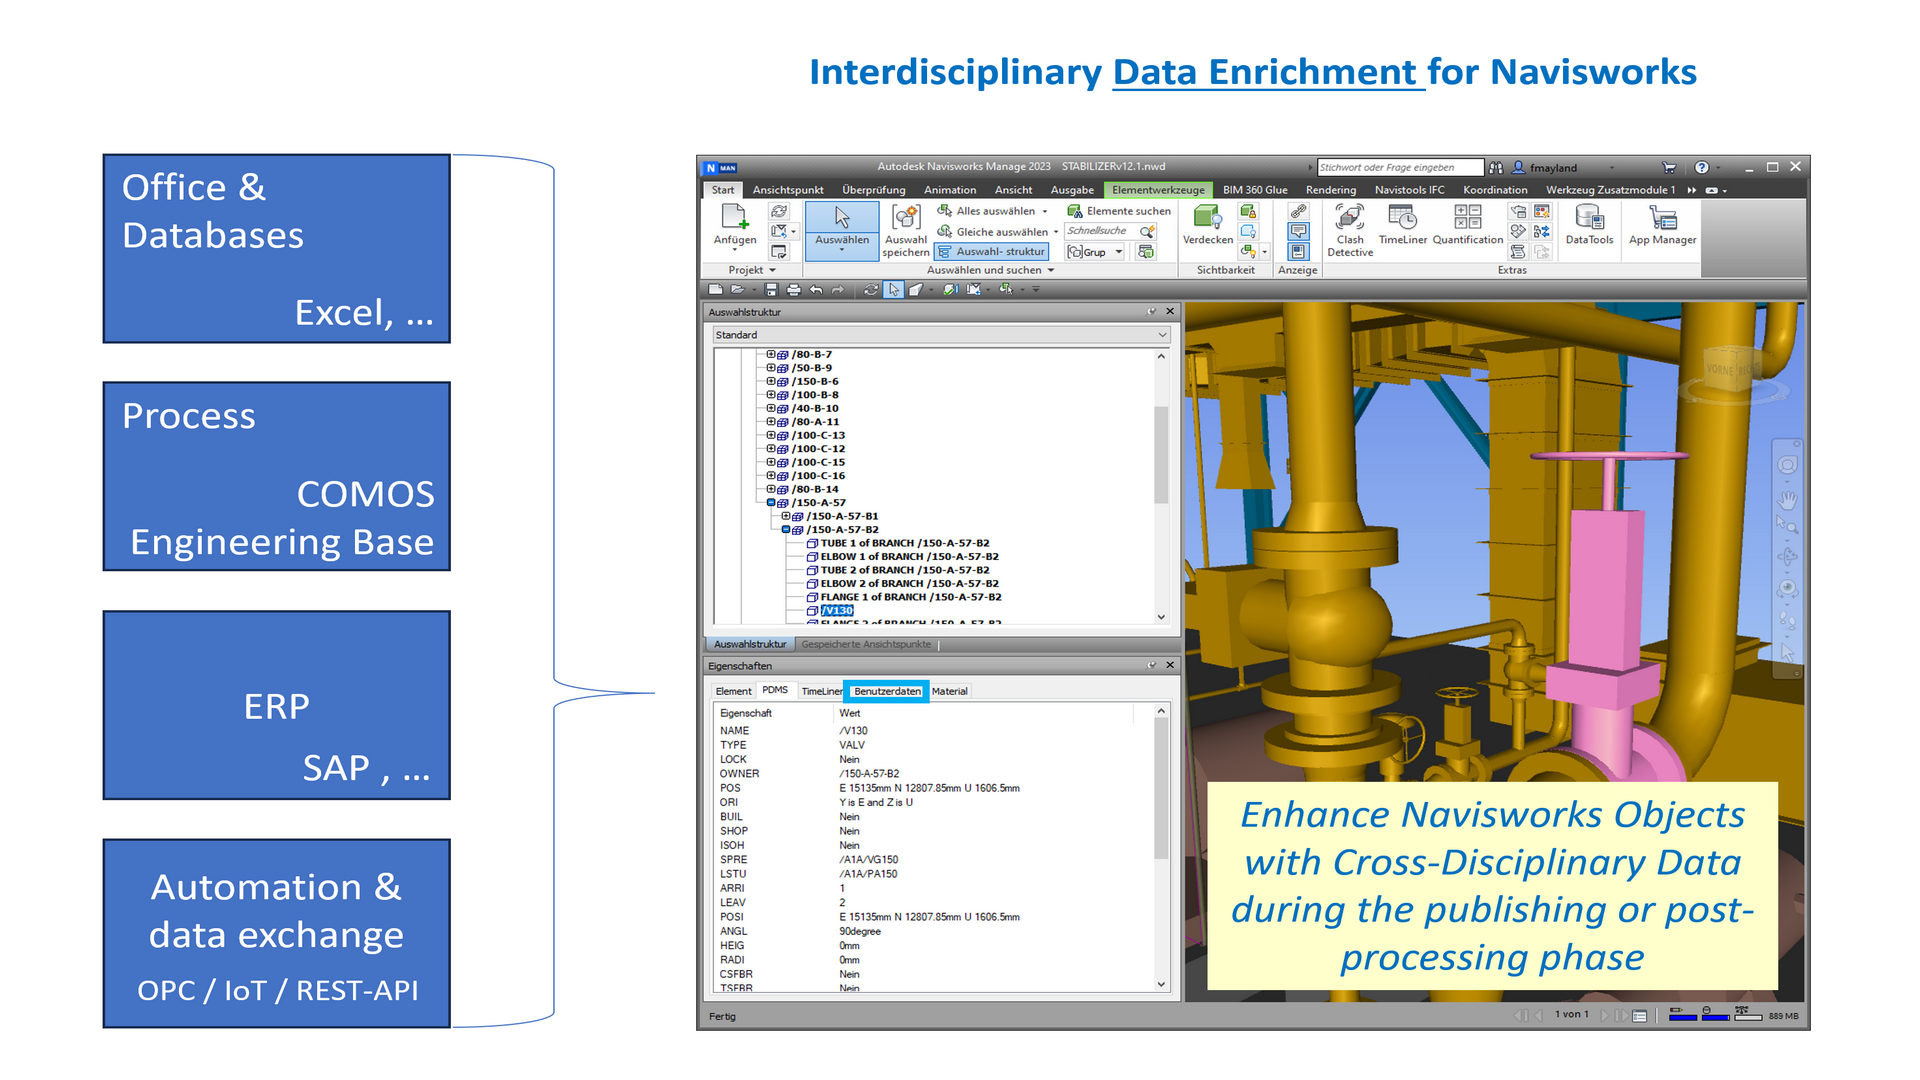 Interdisciplinary Data Enrichment for Navisworks